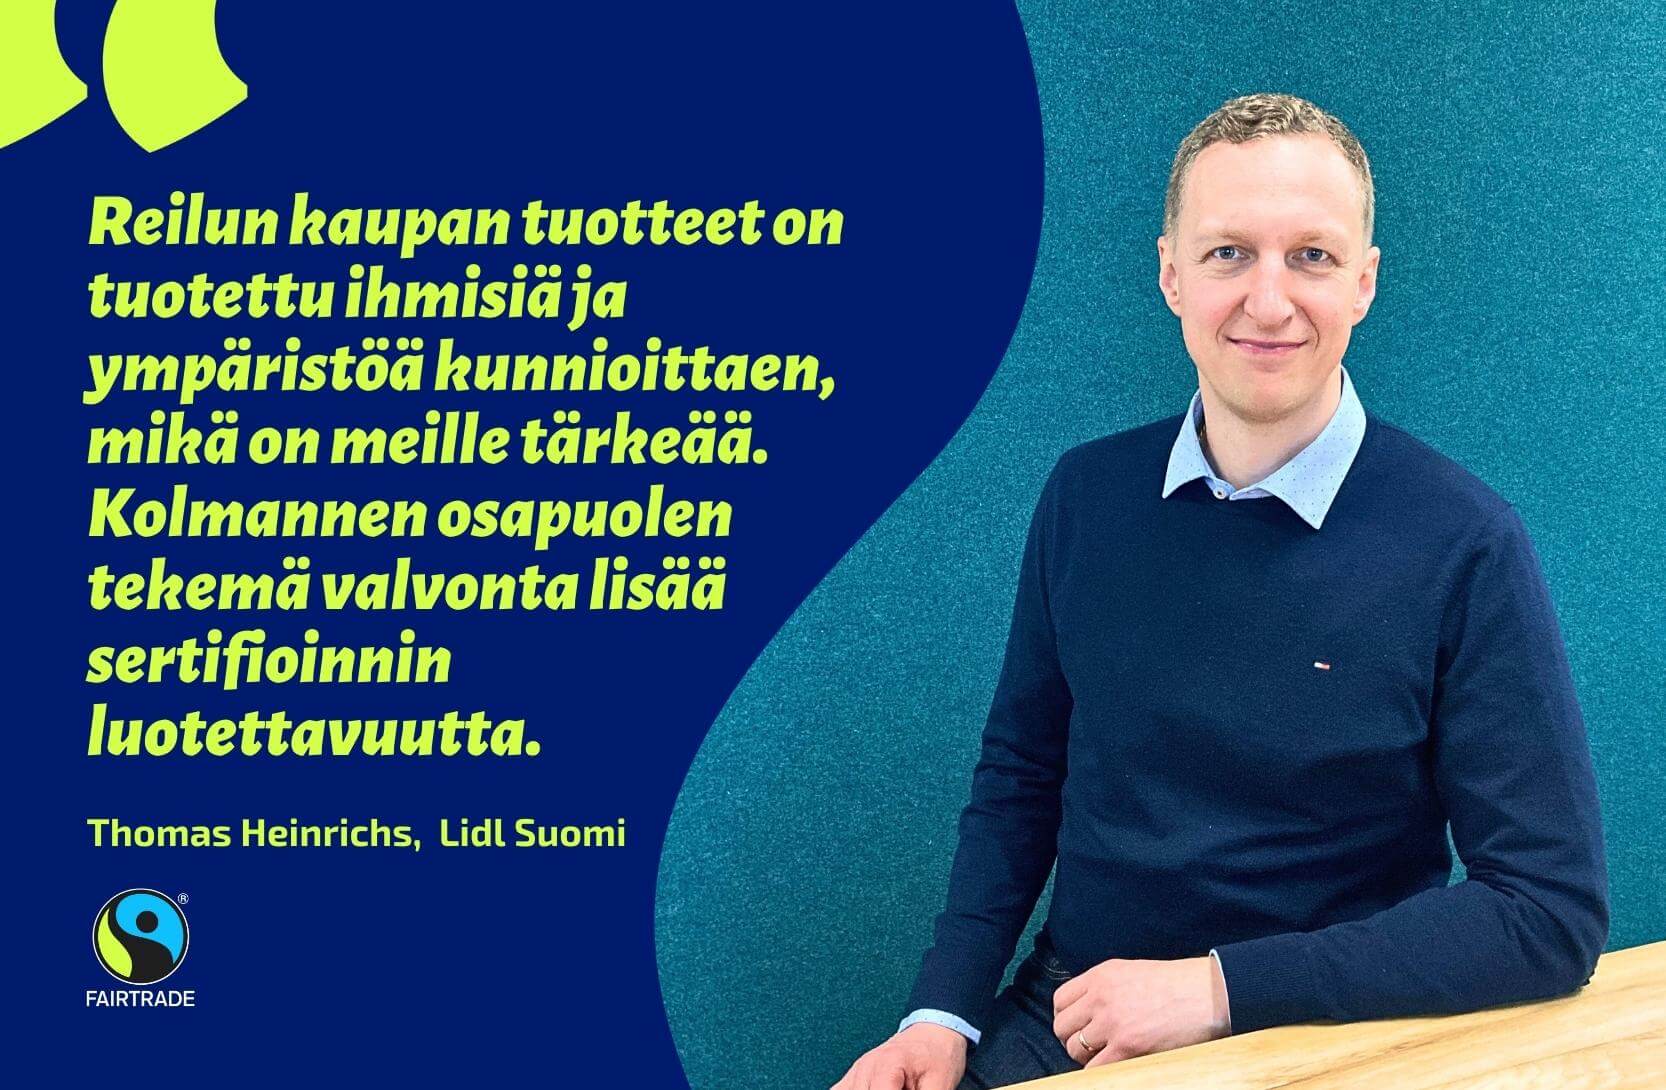 Lidl yhdistää vastuullisuuden ja edulliset hinnat. Kuvassa Lidl Suomen osto-osaston johtaja Thomas Heinrichs. Lainaus kuvassa: "Reilun kaupan tuotteet on tuotettu ihmisiä ja ympäristöä kunnioittaen, mikä on meille tärkeää. Kolmannen osapuolen tekemä valvonta lisää sertifioinnin luotettavuutta".